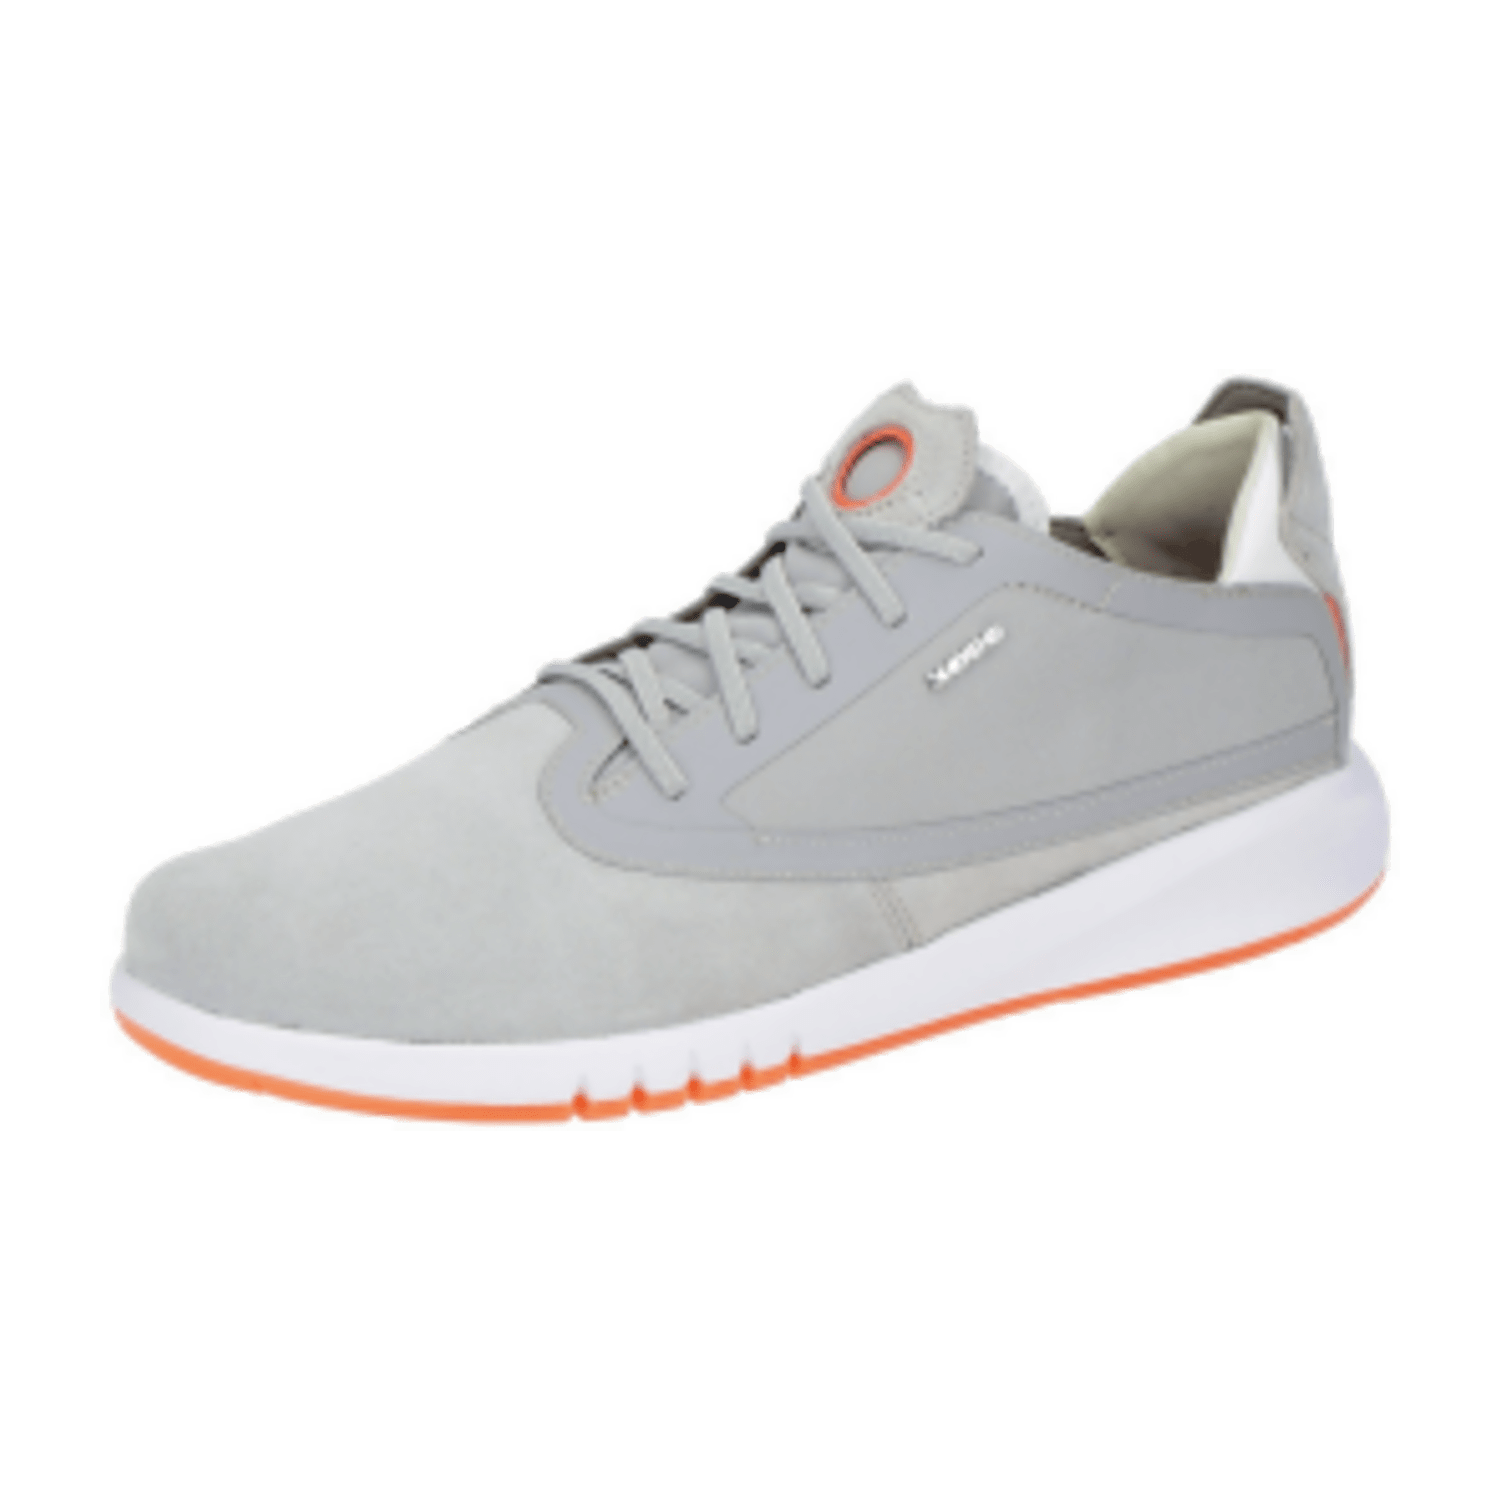 Geox Aerantis Sneaker Schuhe grau weiß orange U027FA